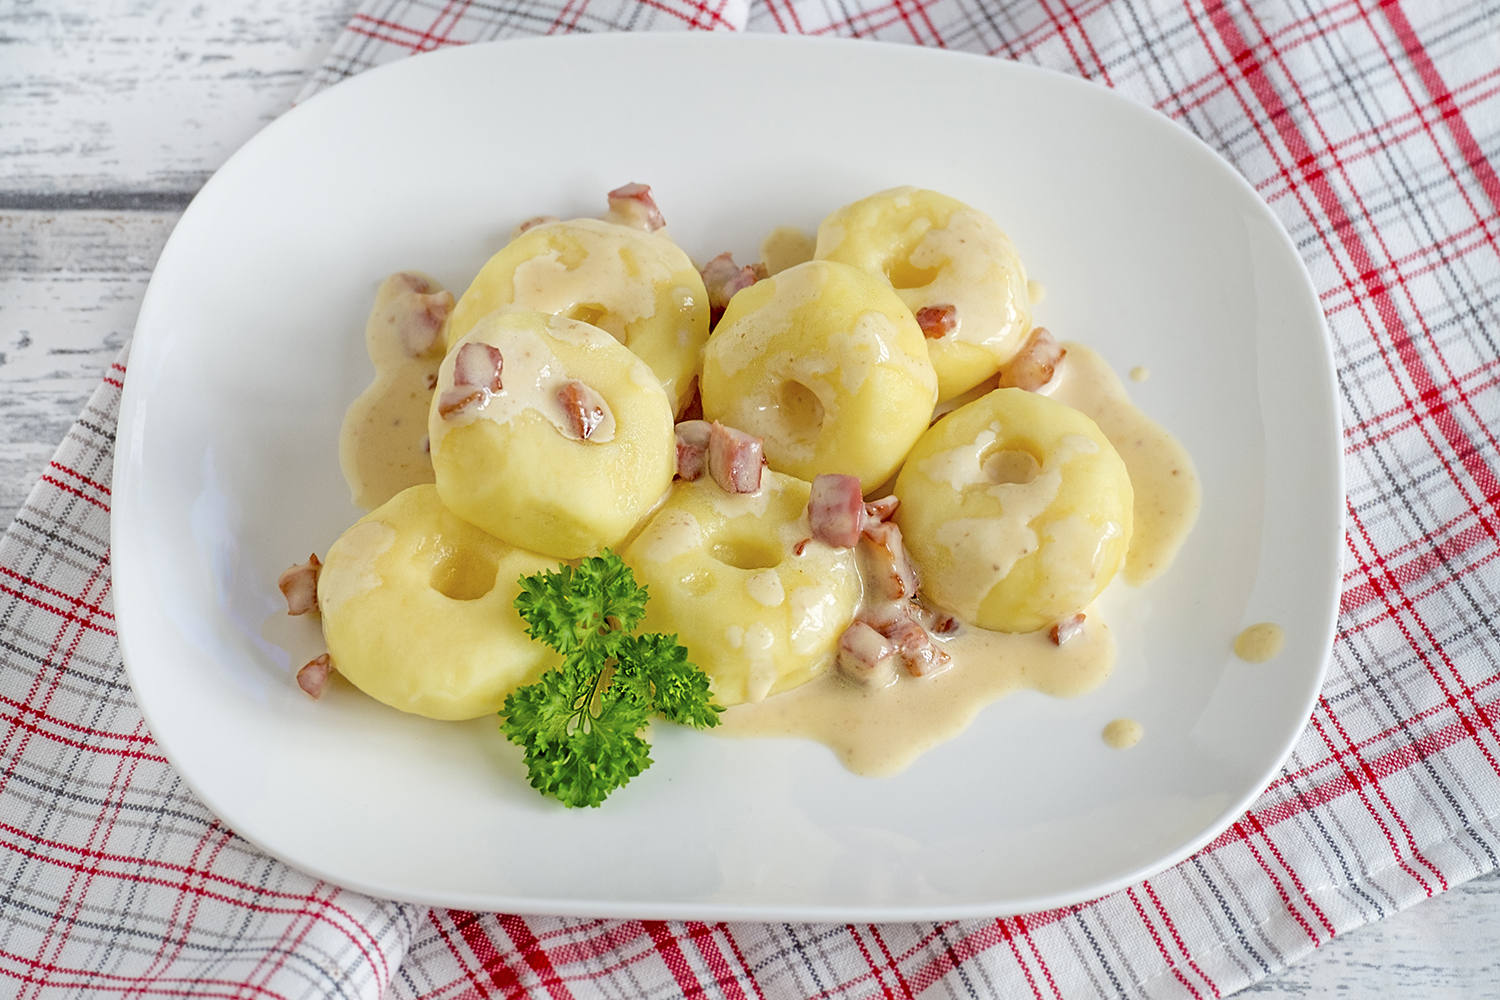 Shuraba borduurwerk Cordelia Aardappel donuts met roomsaus Kluski śląskie - Poolse recepten - – ElsaRblog